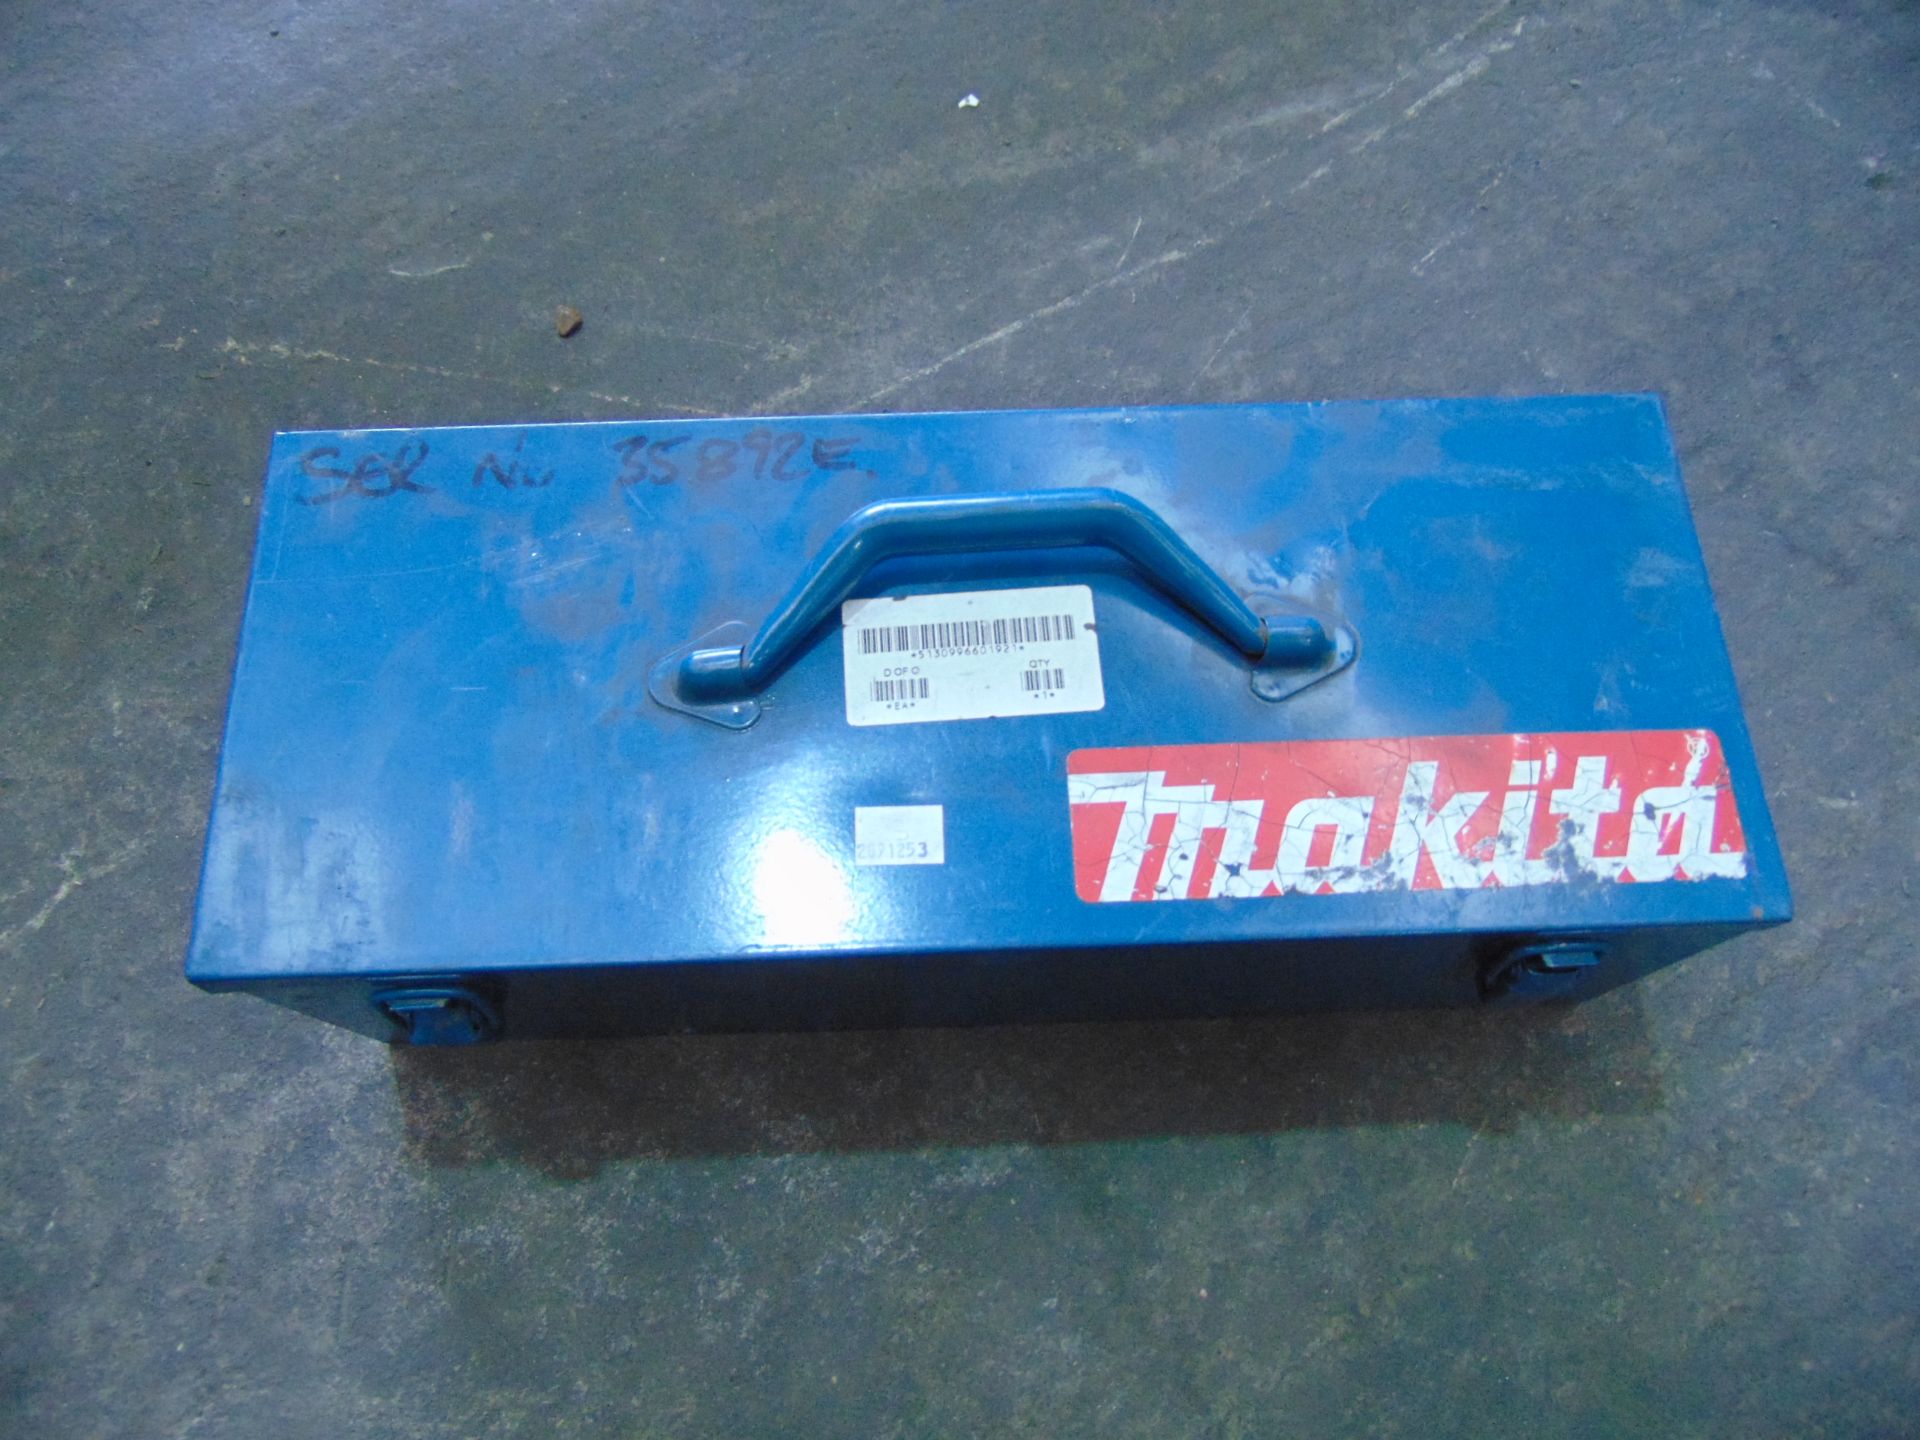 Makita 9564 4 1/2"/115mm Angle Grinder - Image 6 of 6